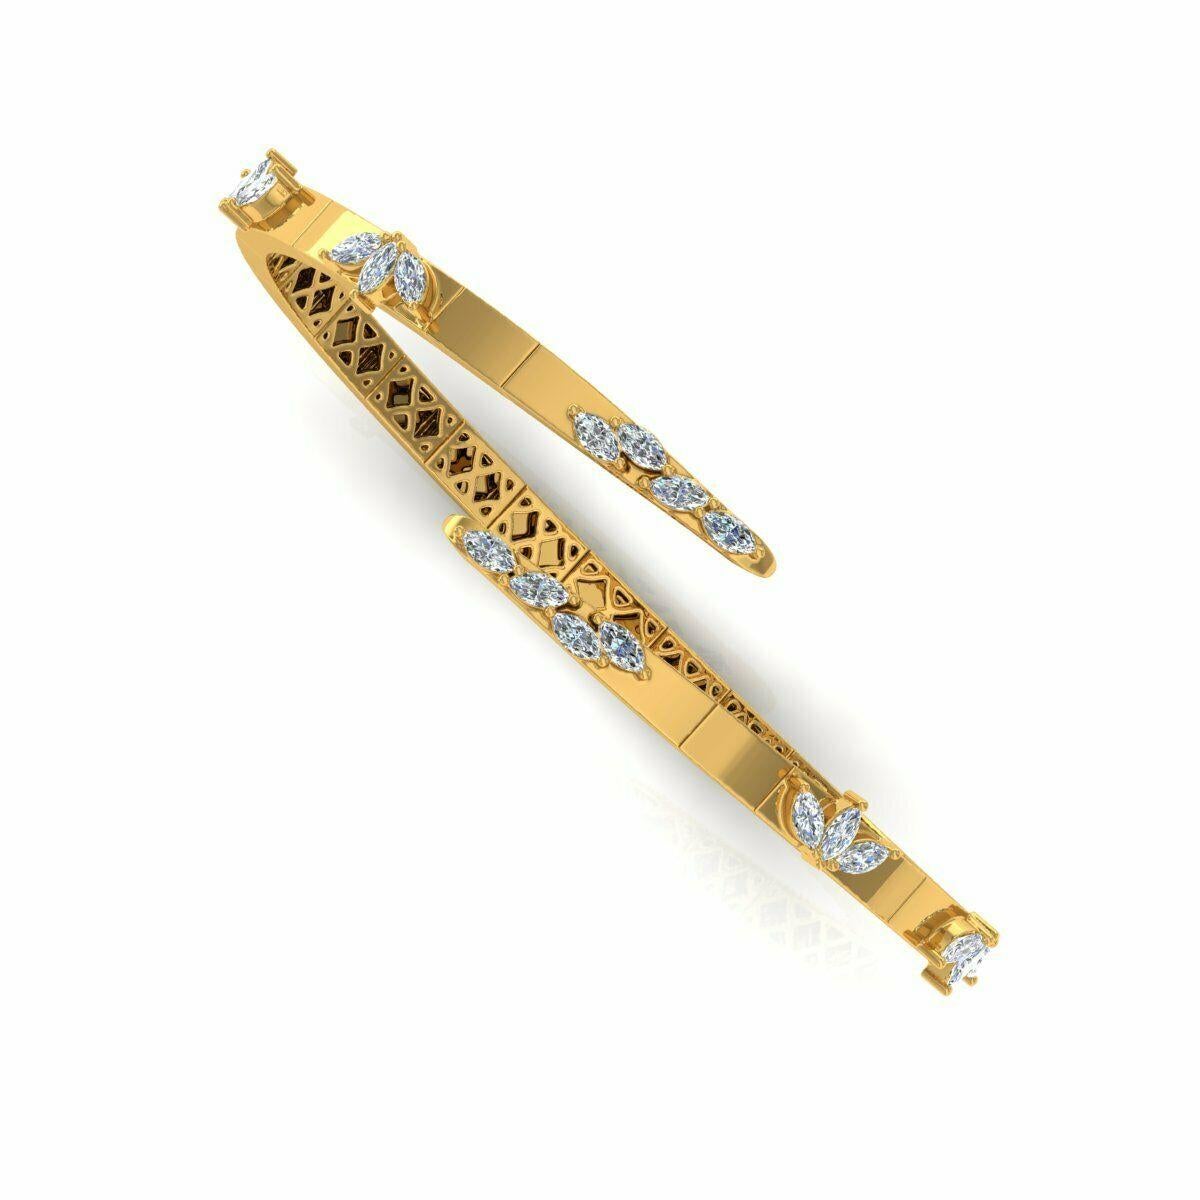 Dieses Armband aus 14-karätigem Gelbgold ist von Hand mit funkelnden Diamanten von 1,50 Karat besetzt. Erhältlich in Gelb-, Rosé- und Weißgold. Kombinieren Sie ihn mit Ihren Lieblingsstücken oder tragen Sie ihn allein.

FOLLOW MEGHNA JEWELS